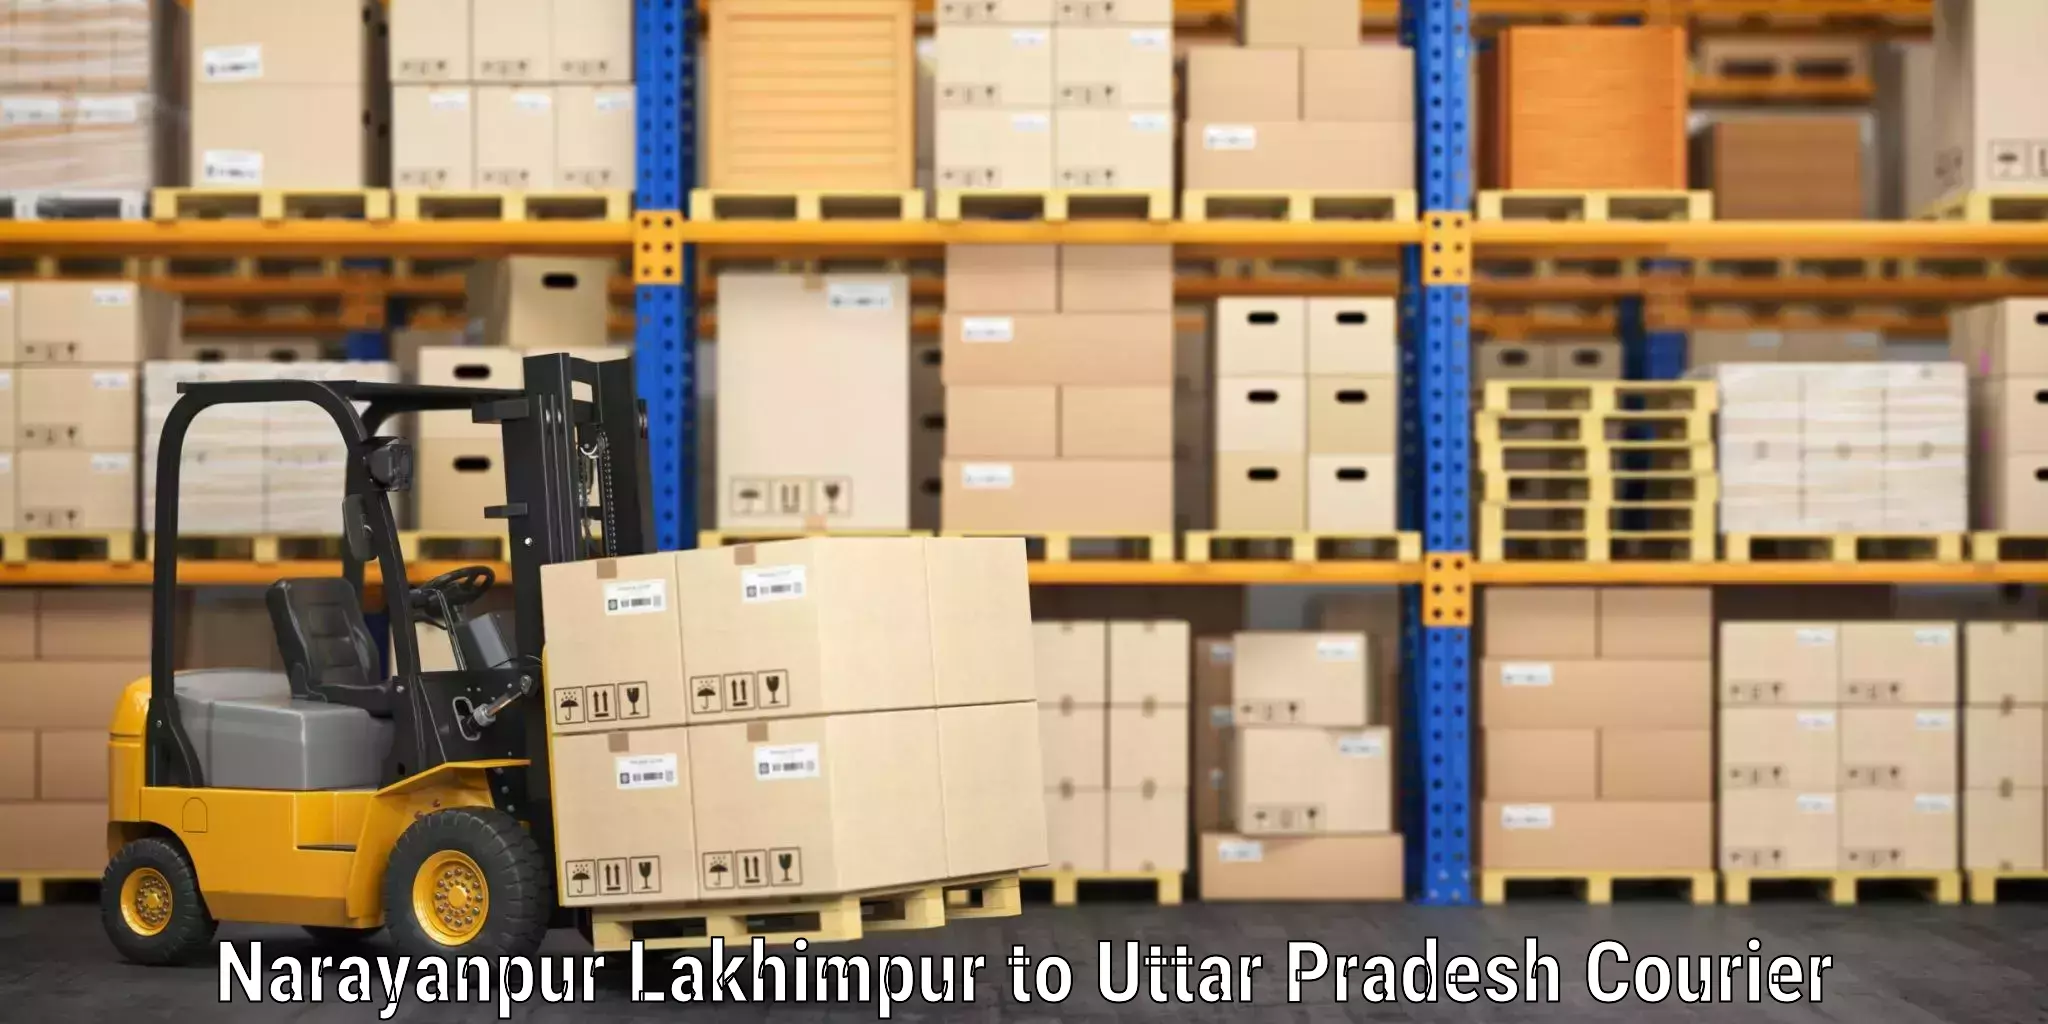 Baggage courier optimization Narayanpur Lakhimpur to Uttar Pradesh